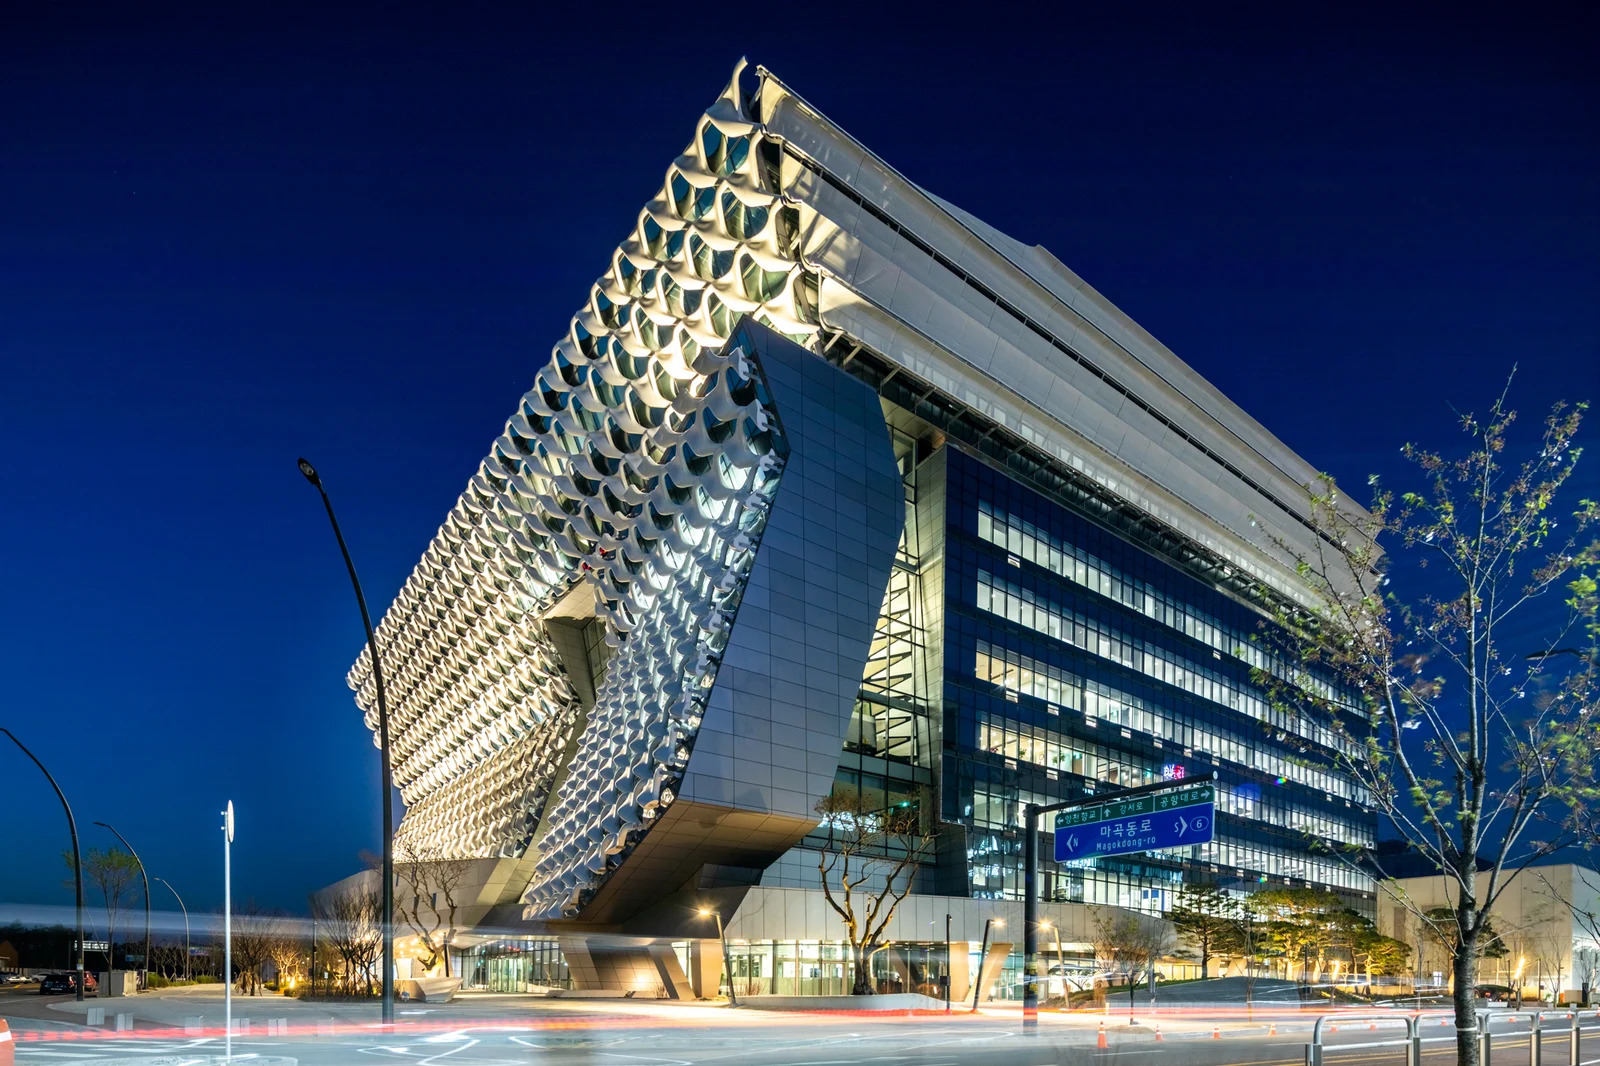 Kolon One & Only Tower à Séoul, Corée du Sud (Morphosis Architects)